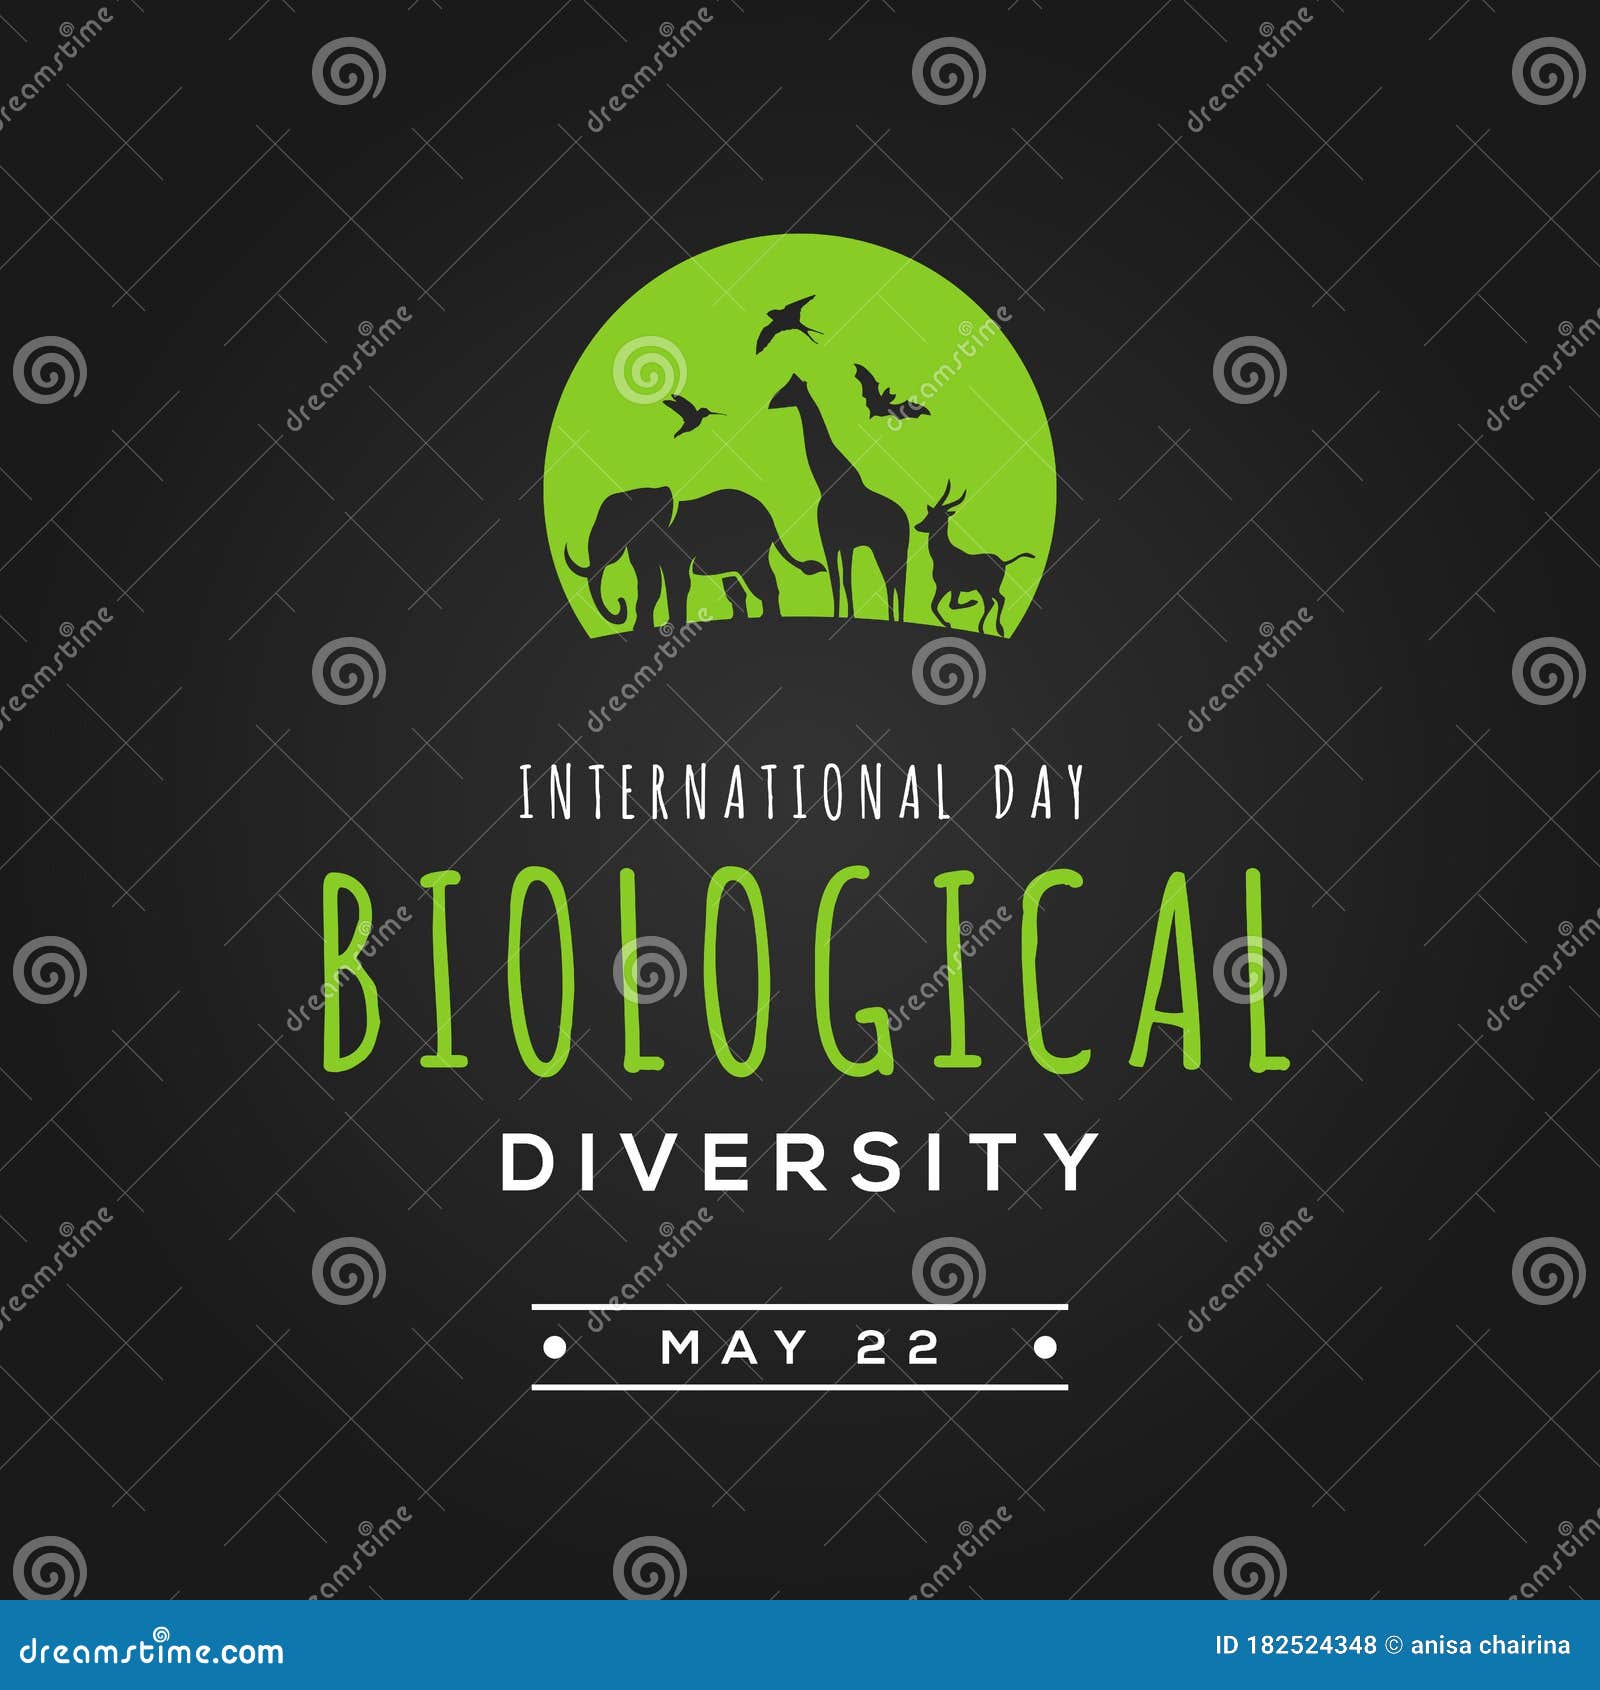 International Day Biological Diversity Vector Design Illustration for ...